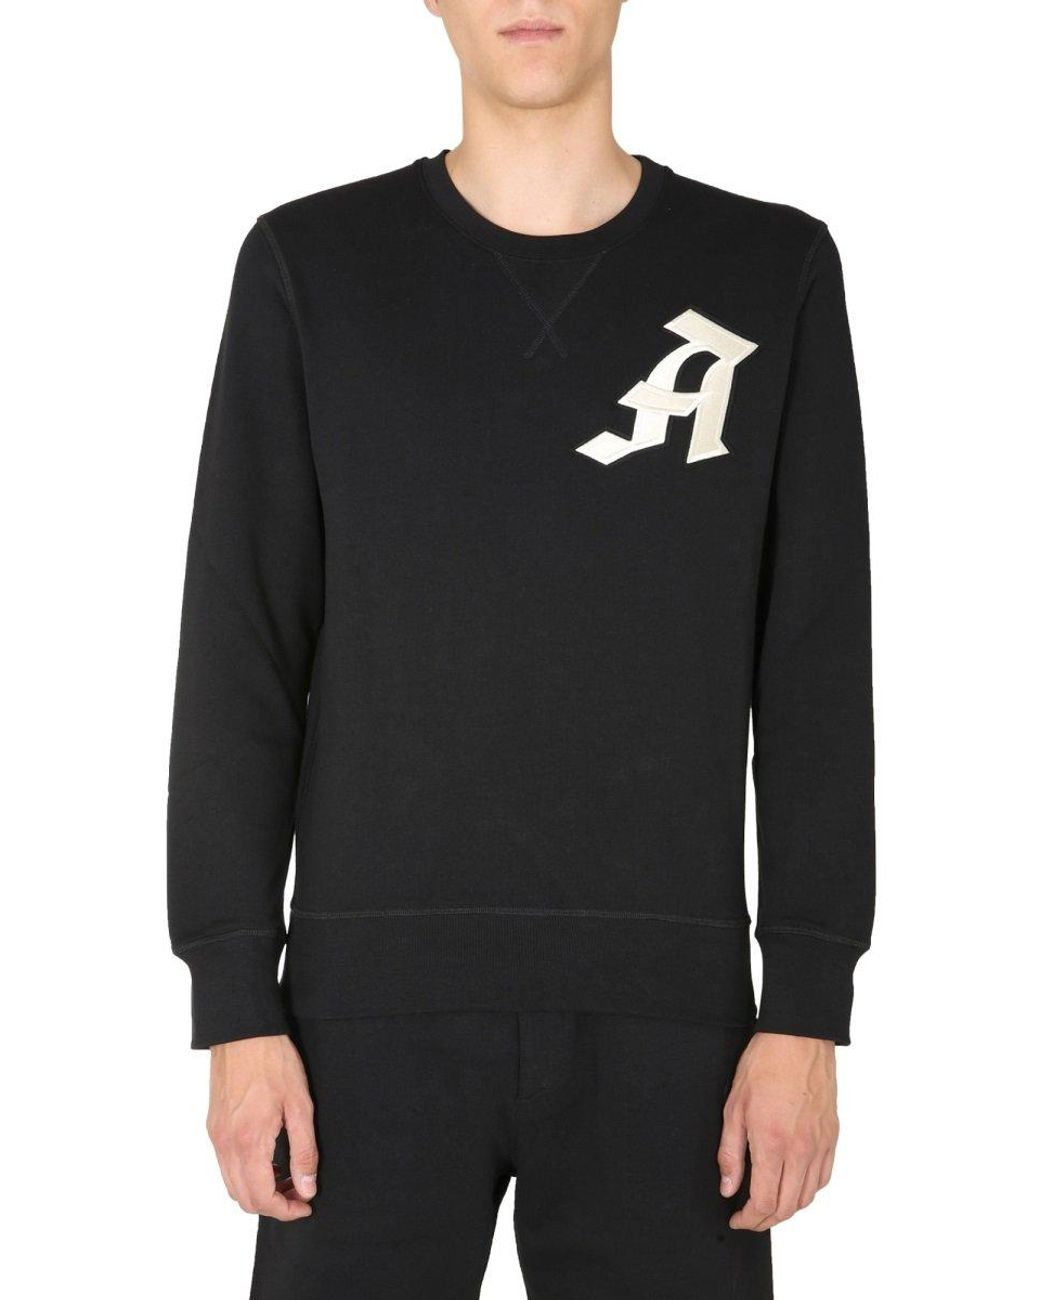 Alexander McQueen Crew Neck Sweatshirt in Black for Men - Lyst